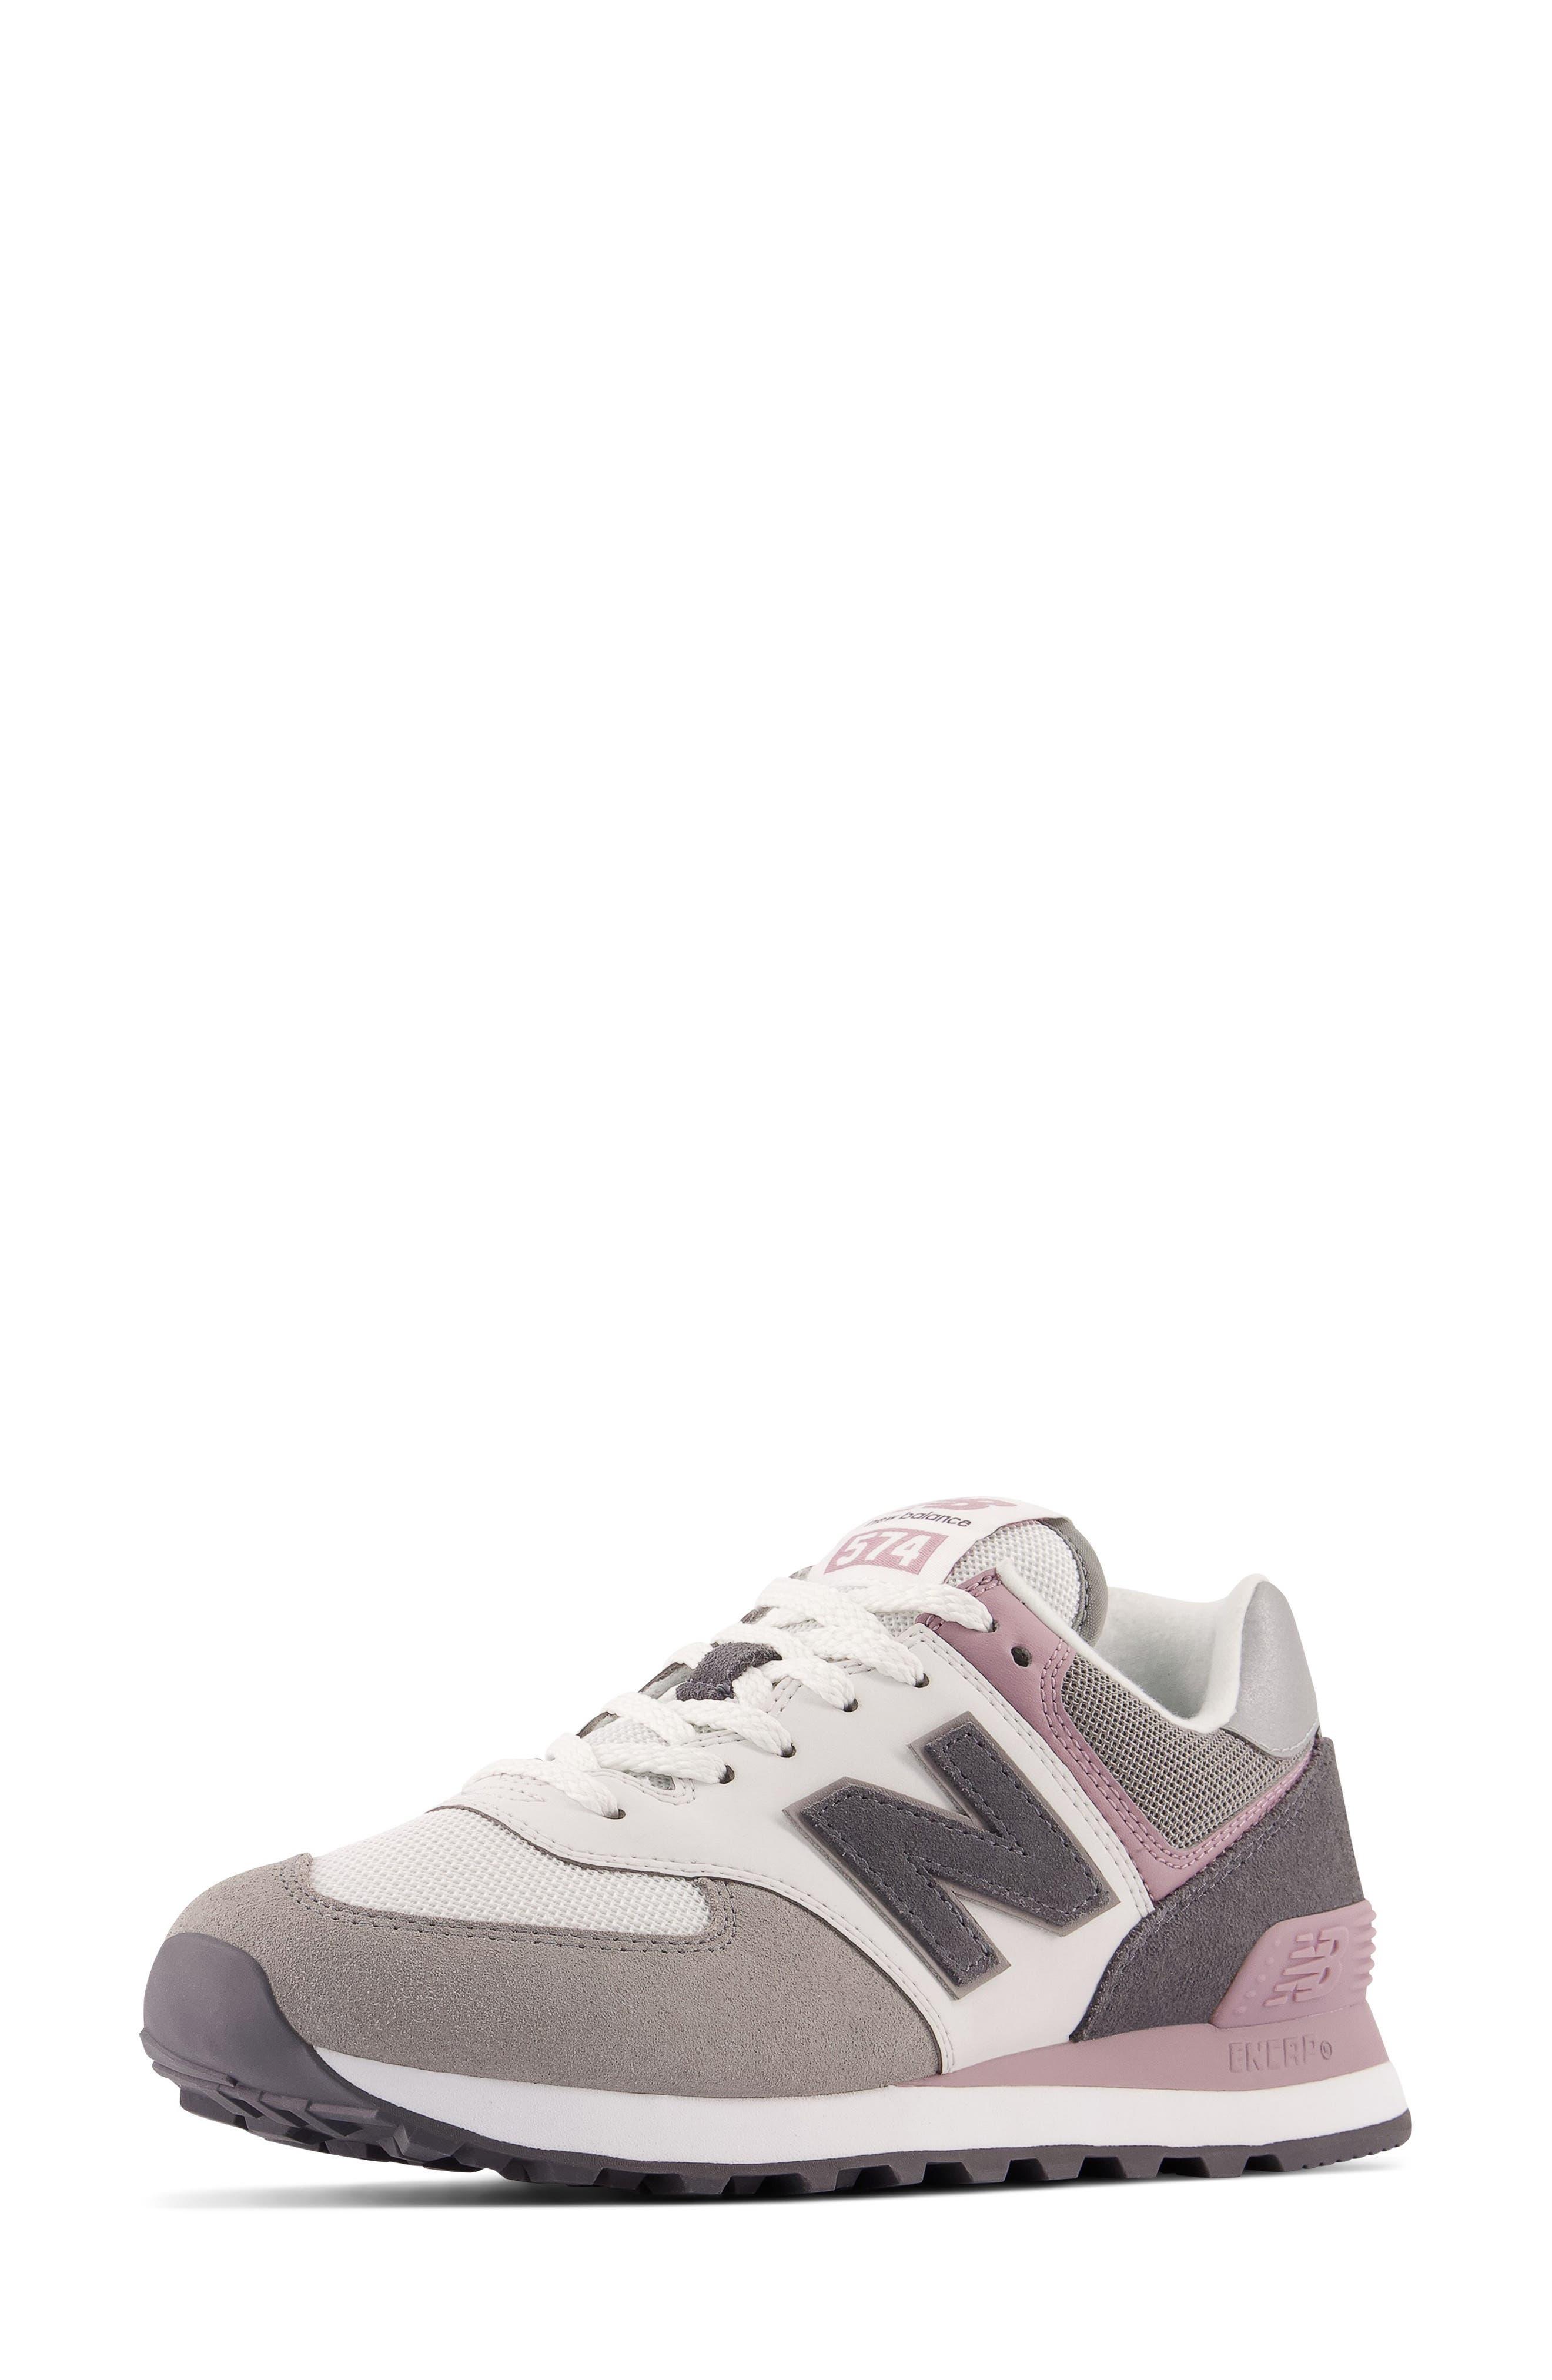 New Balance 574 V2 Kaleidoscope Sneaker in White | Lyst